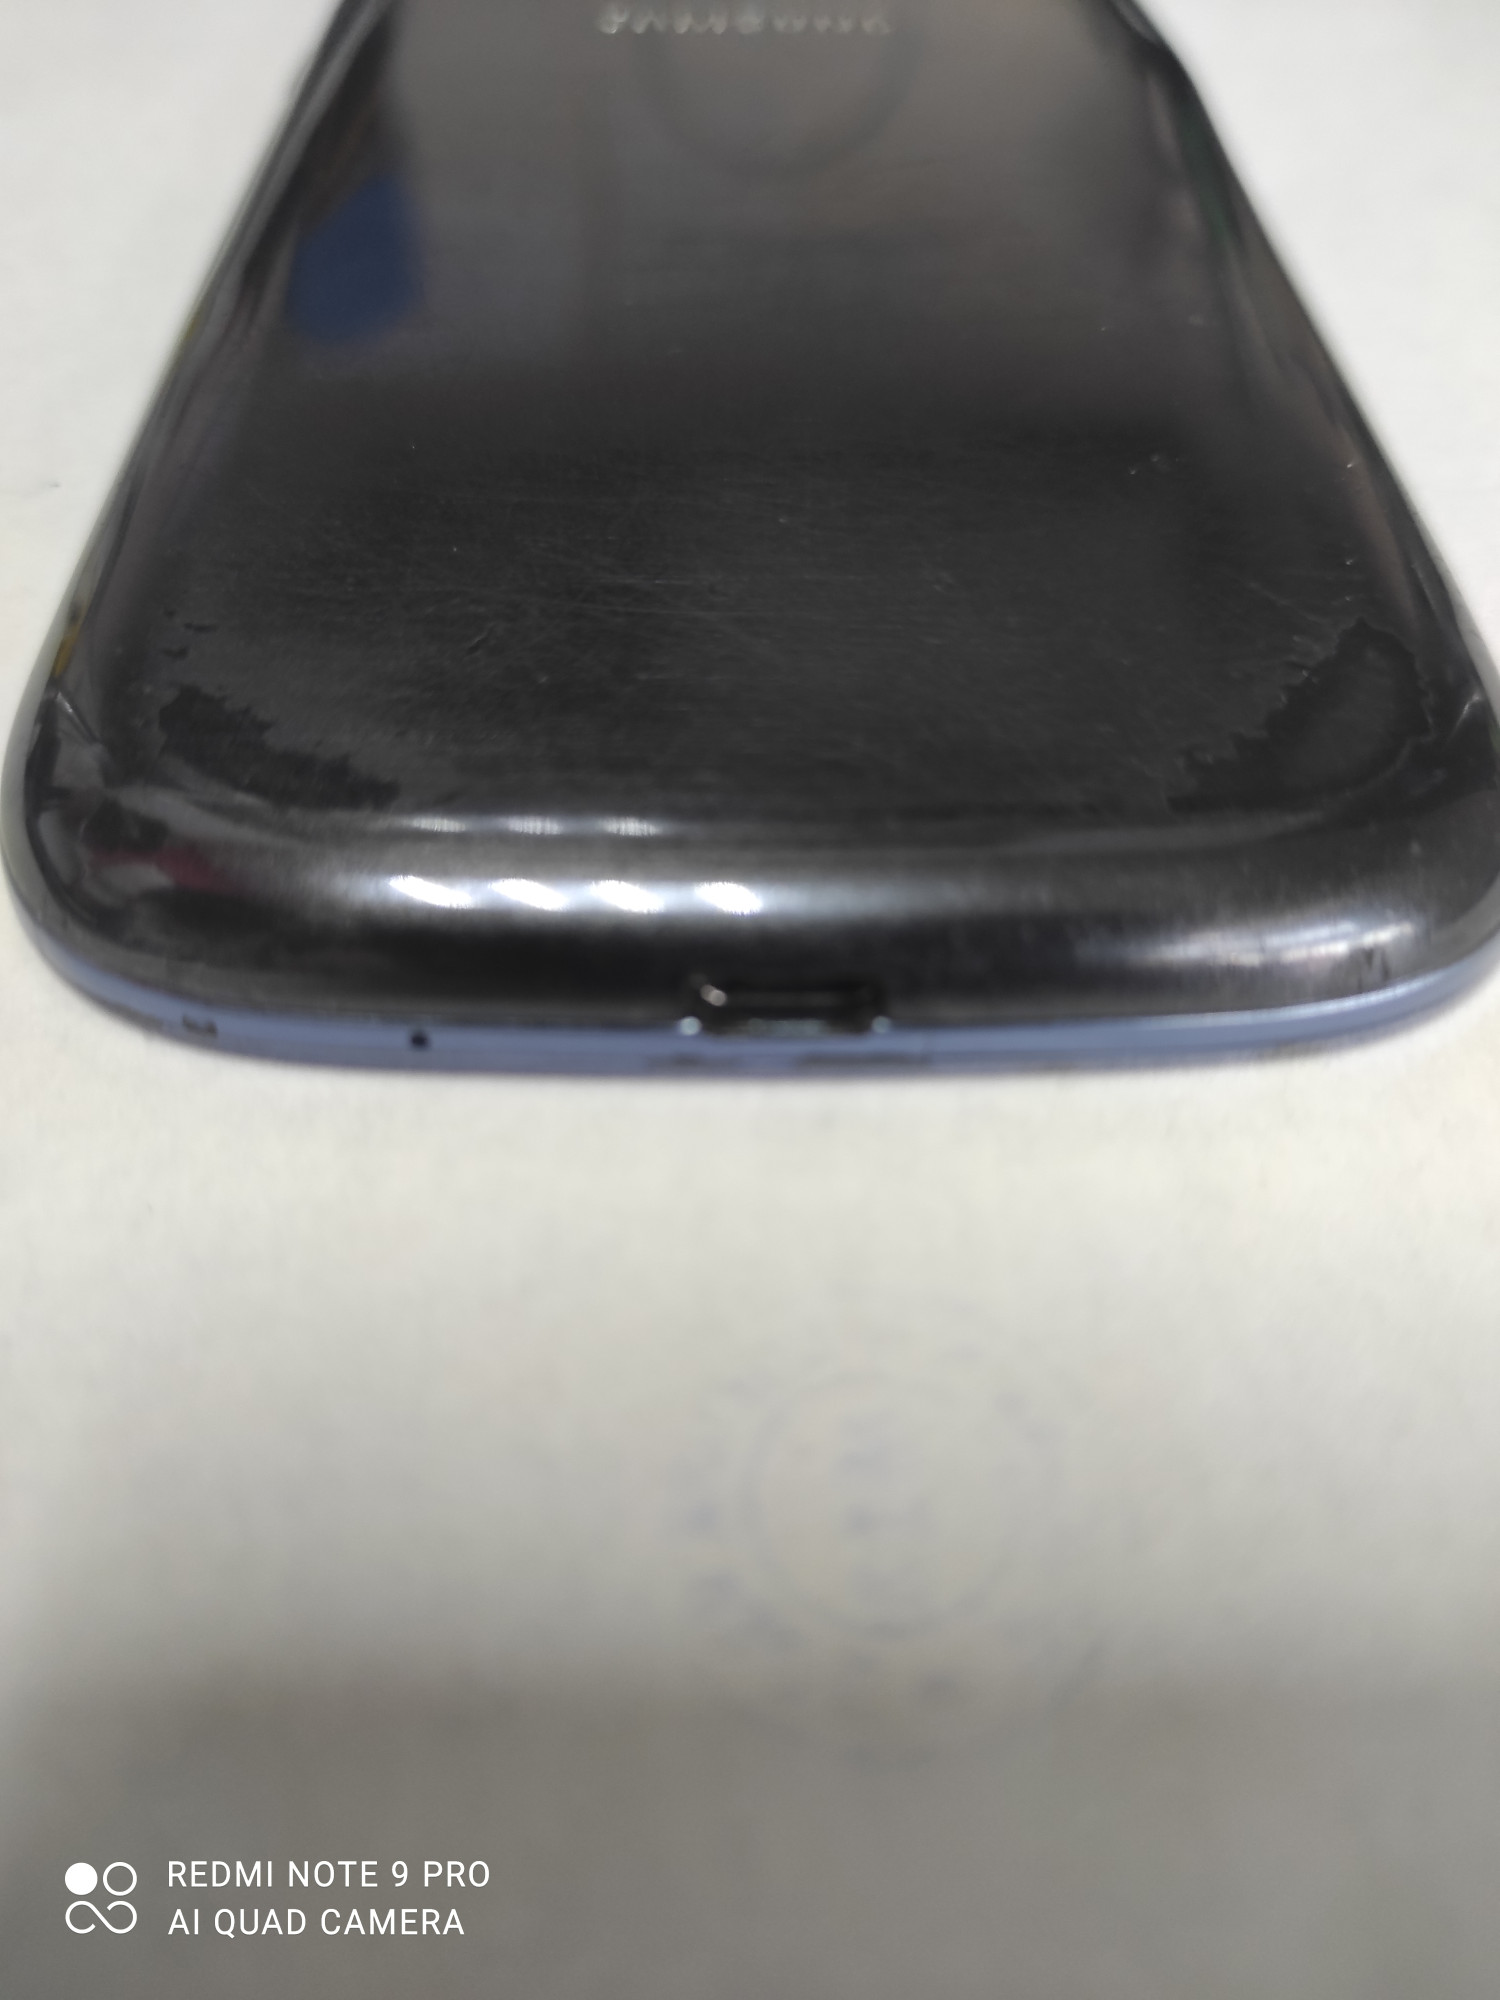 Samsung Galaxy S3 (GT-I9300) 1/16Gb 1